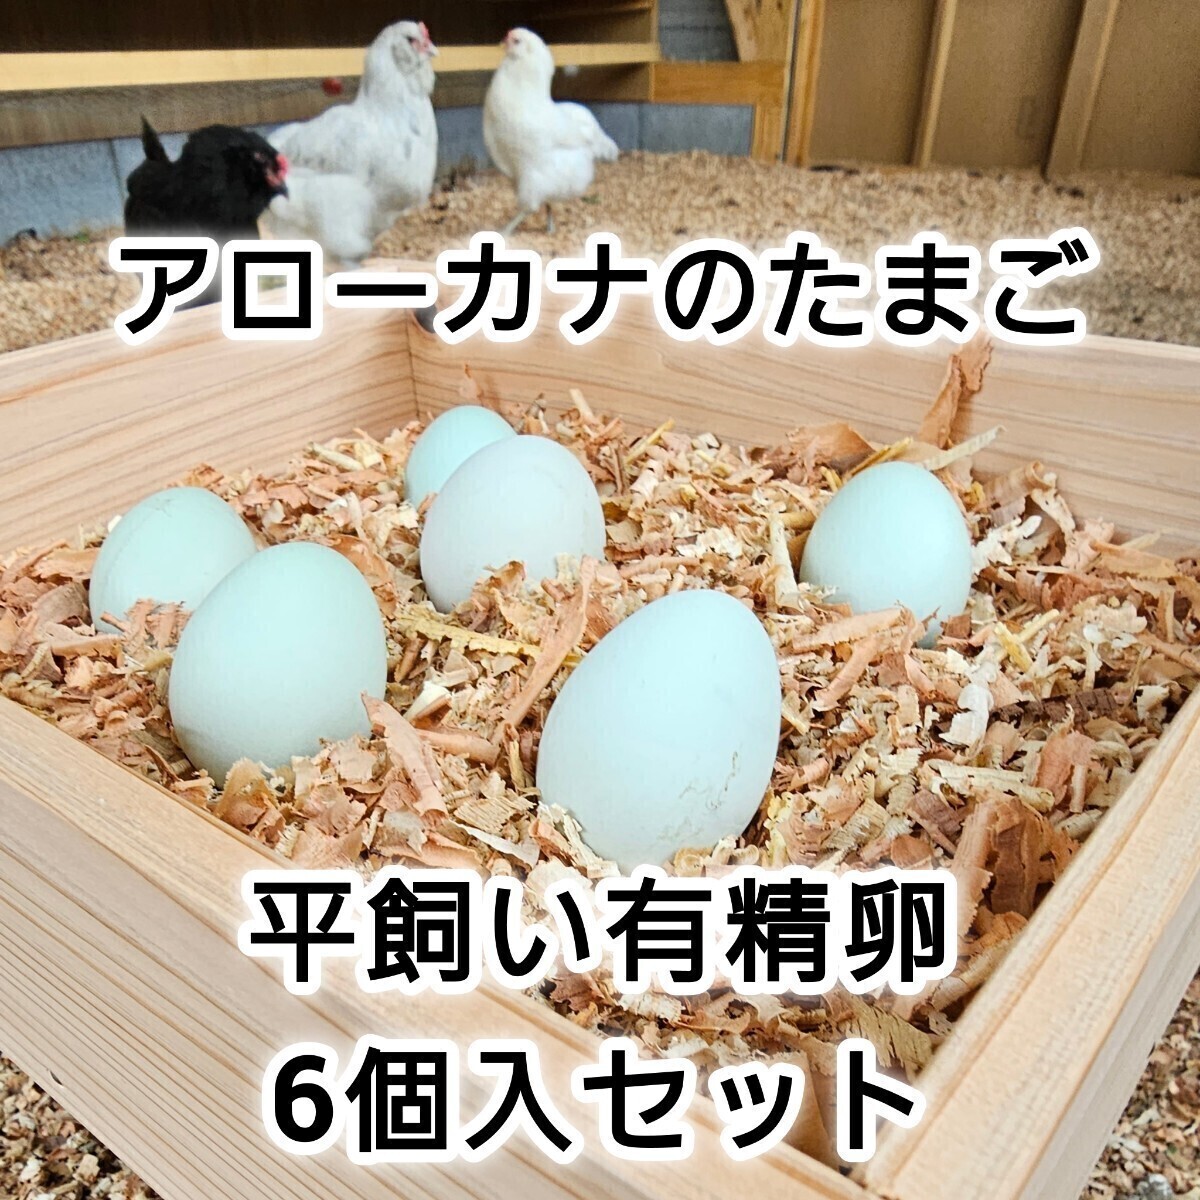 アローカナ のたまご 6個入り セット 有精卵 食用 平飼い 鶏 卵 ニワトリ 即決 の画像1